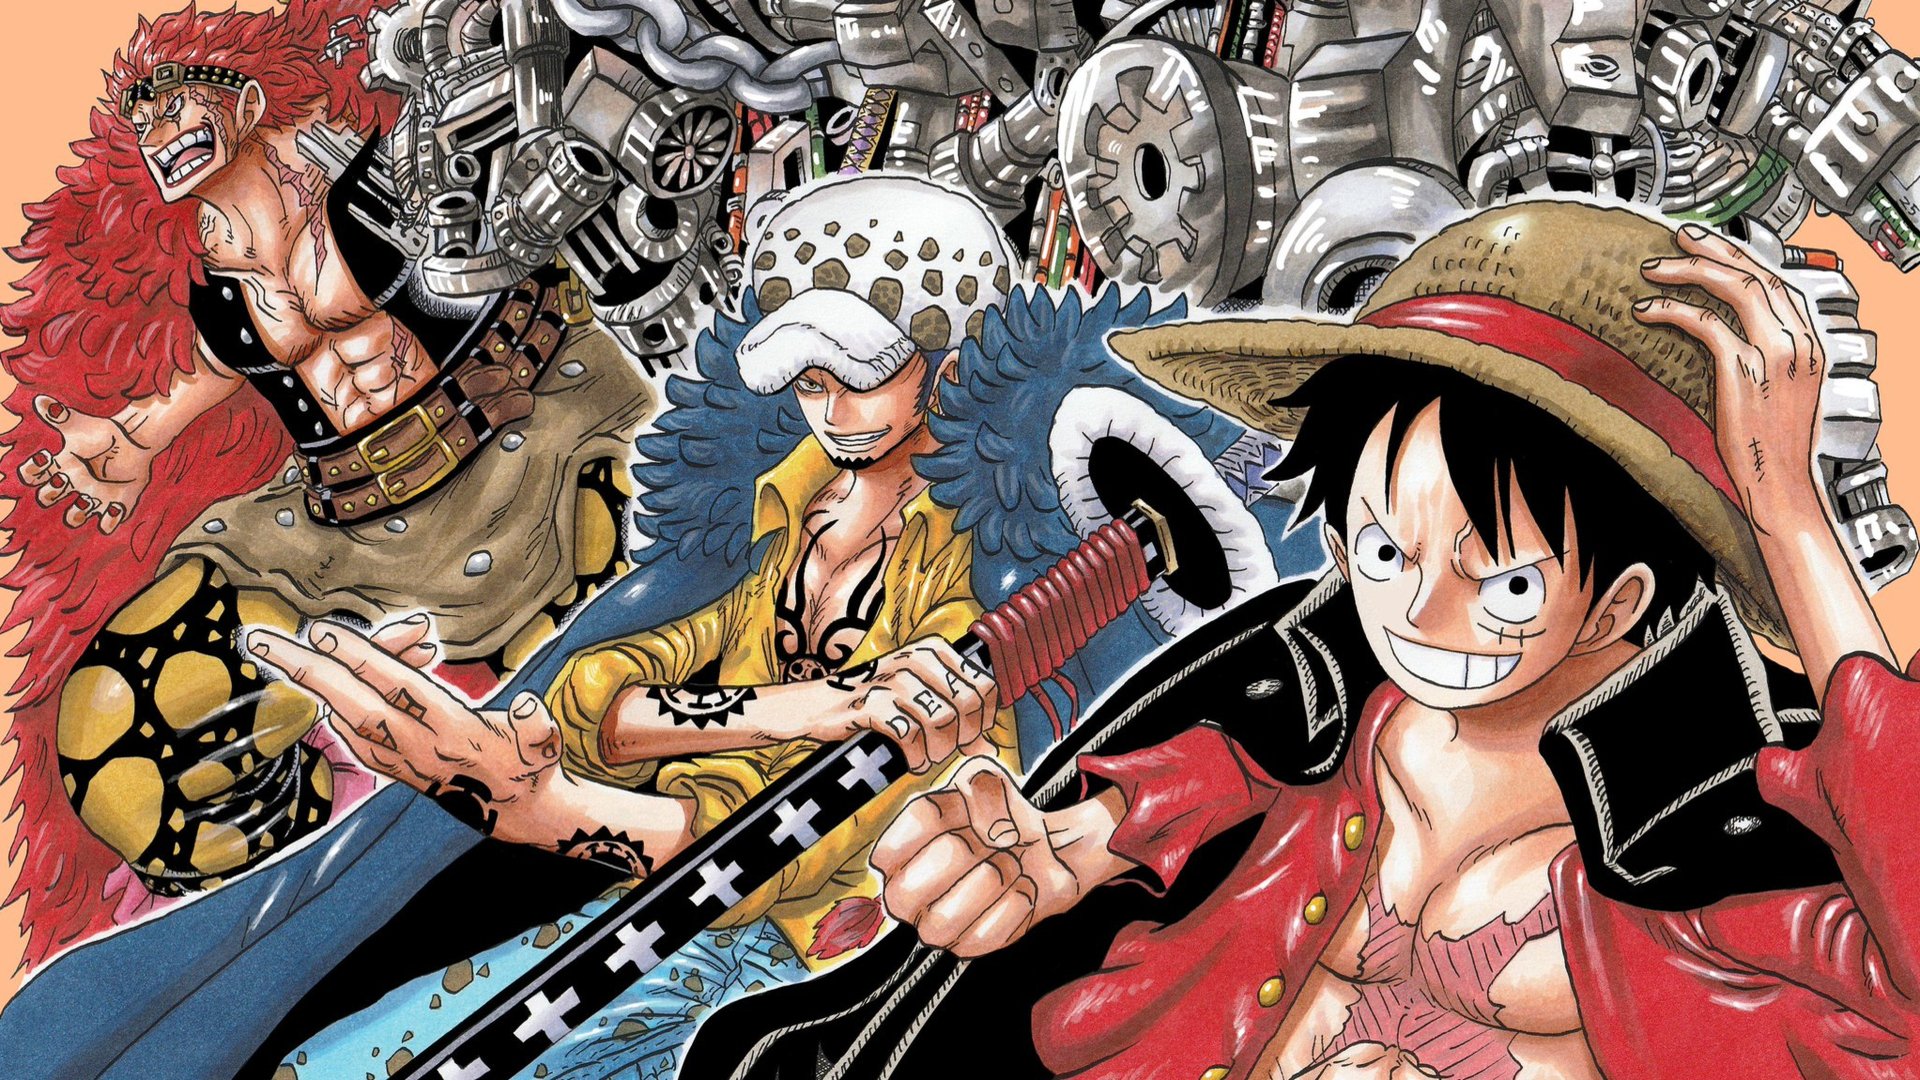 Hãy ngắm nhìn bức ảnh hai nhân vật Law và Kid để cảm nhận sự hợp tác và tình đoàn kết giữa họ trong bộ truyện One Piece. Họ đã cùng nhau vượt qua nhiều thử thách và đánh bại những kẻ thù hung ác, biến chúng thành quá khứ đau thương.